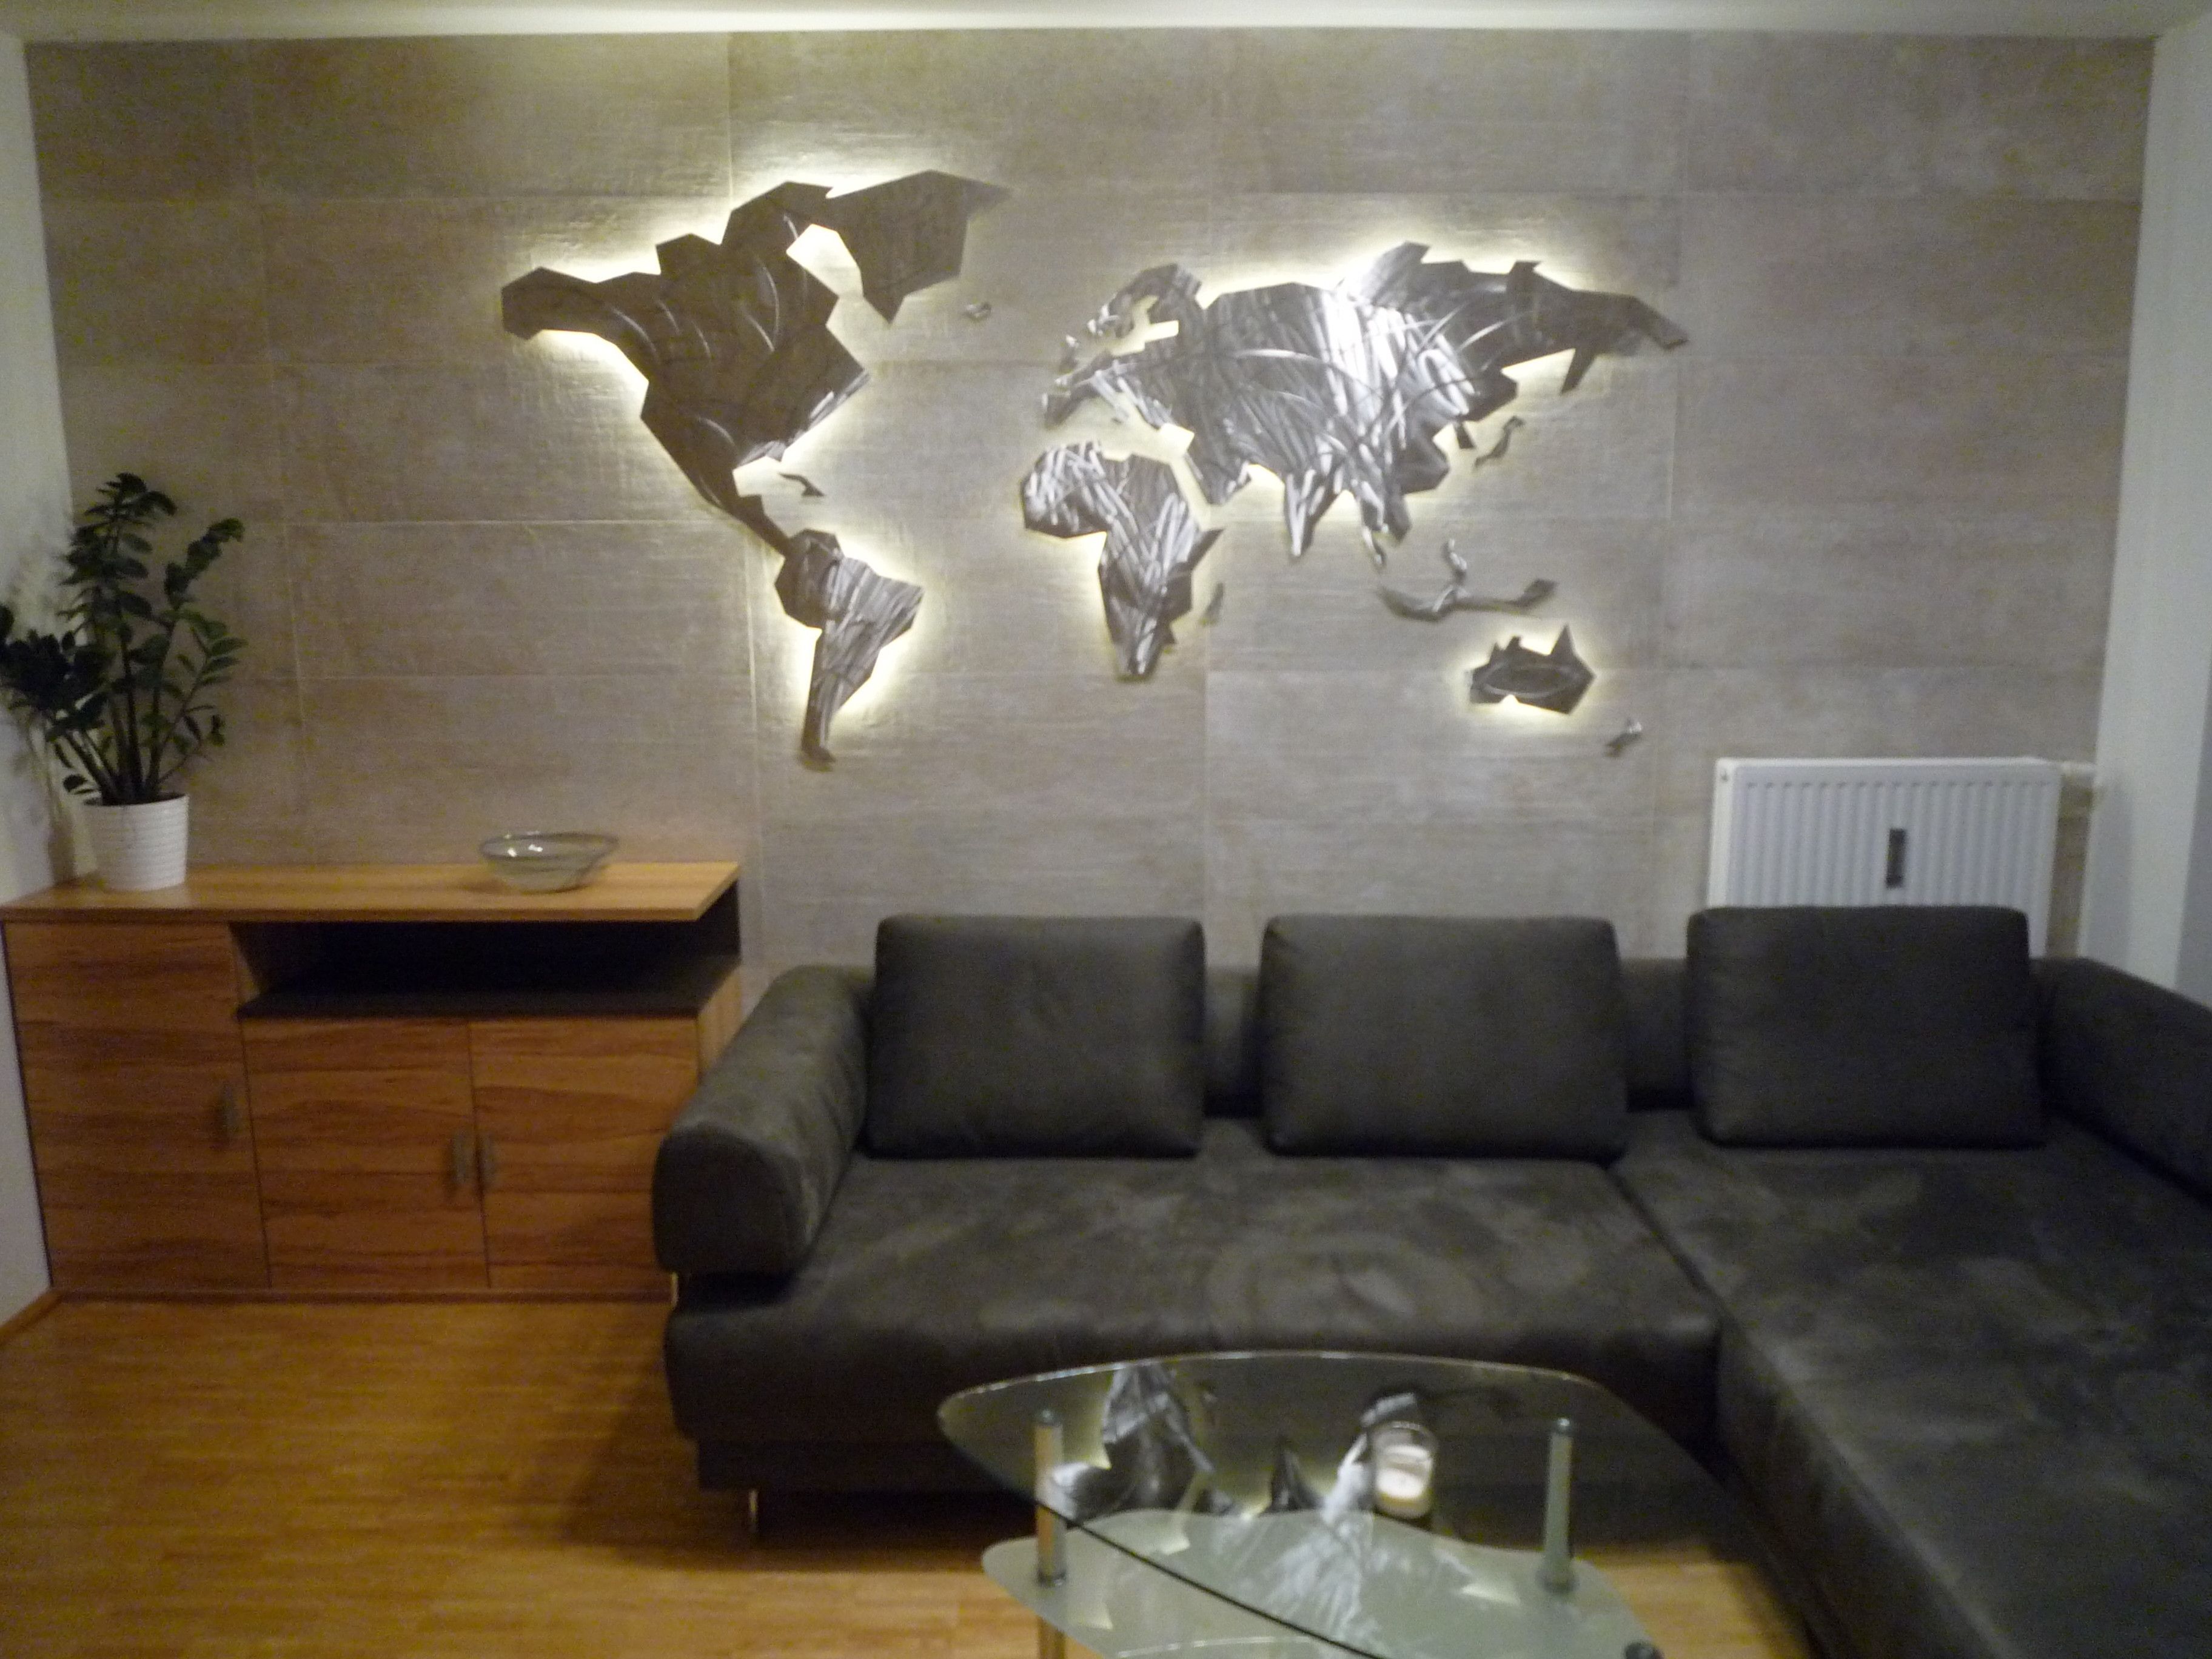 39 Inspirational World Map Wall Art Framed Design Ideas Of Led Wall Regarding World Map Wall Art (Photo 9 of 20)